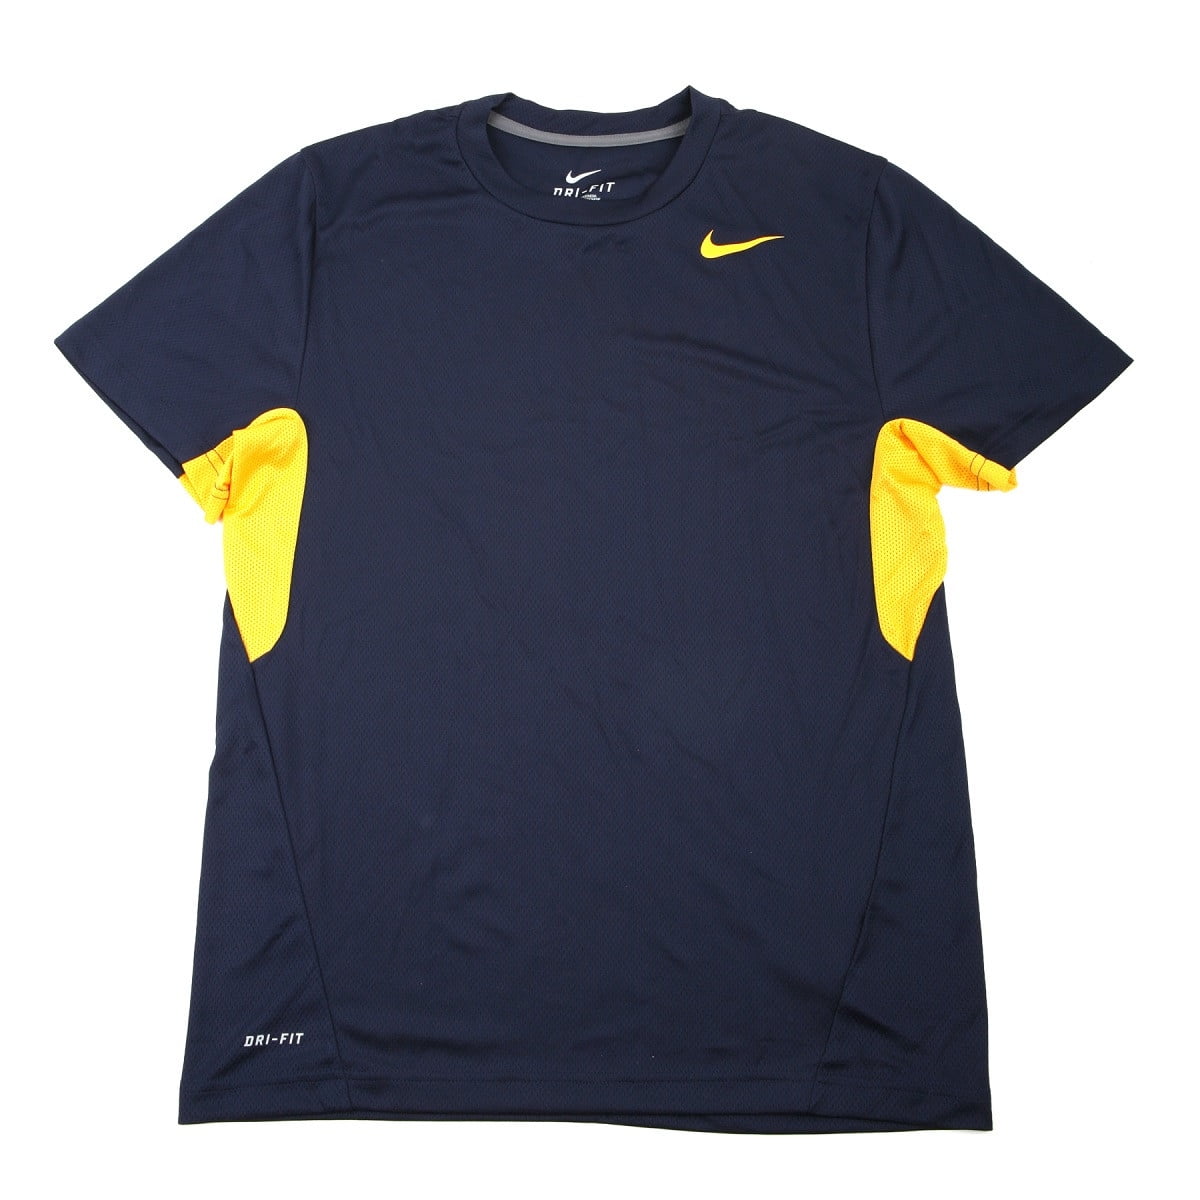 Nike - Nike Men's Vapor Navy/Yellow Dri-FIT Tee Shirt - Large - Walmart ...